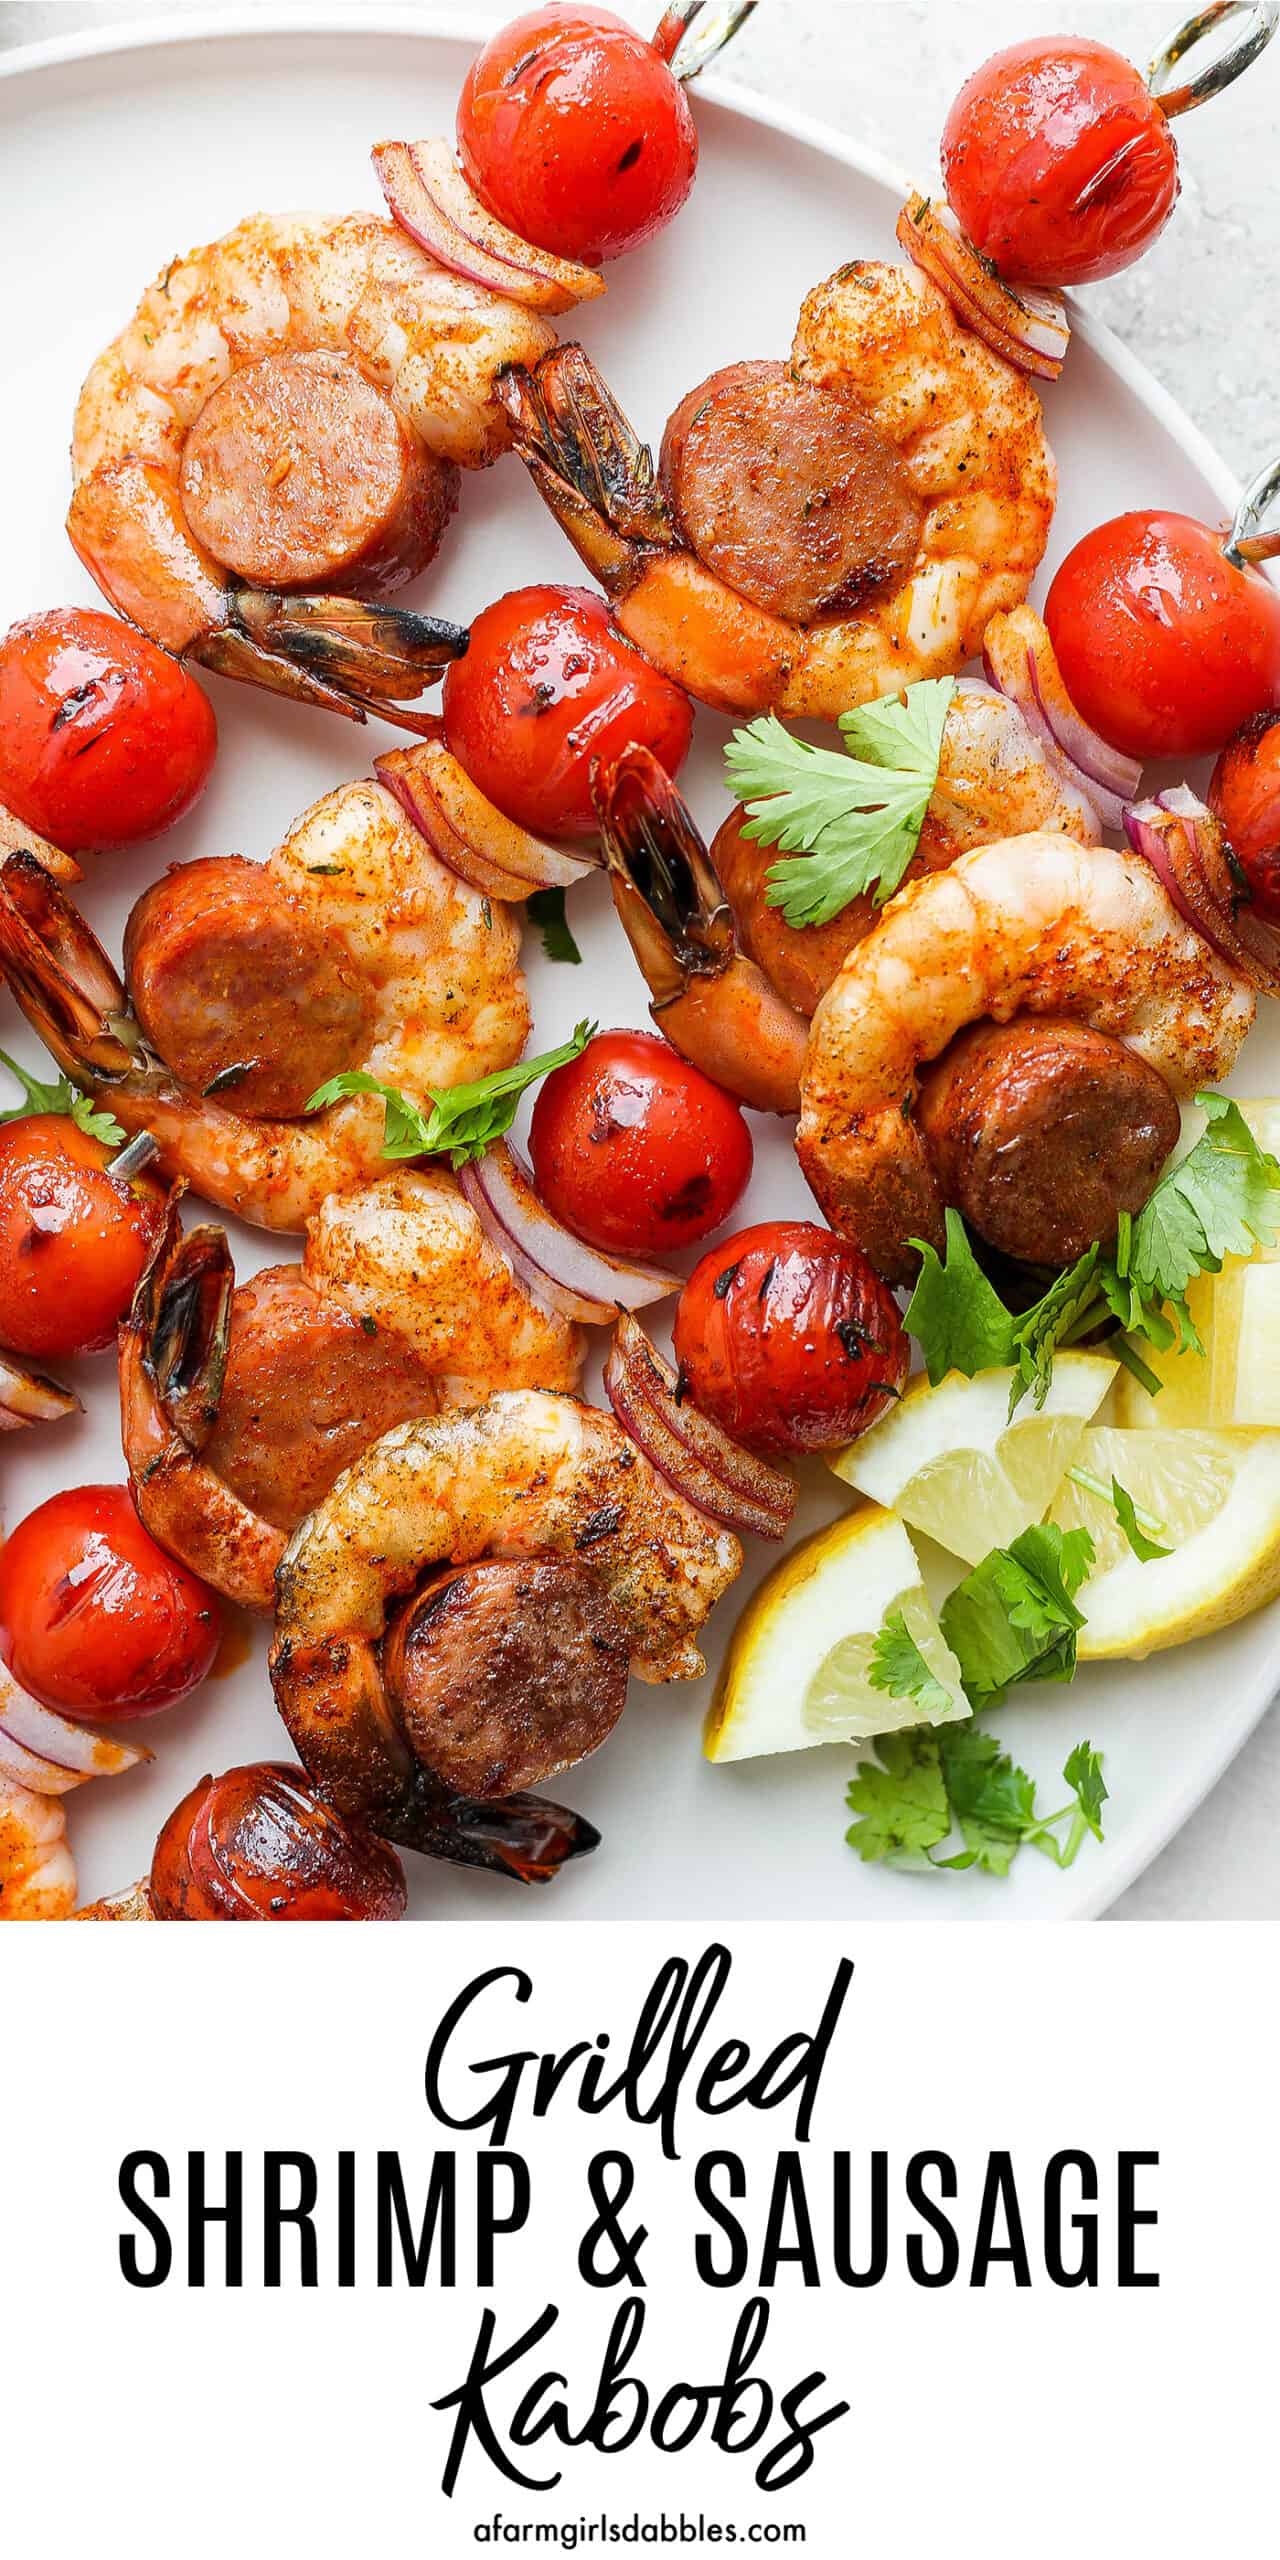 Pinterest image for grilled shrimp & sausage kabobs